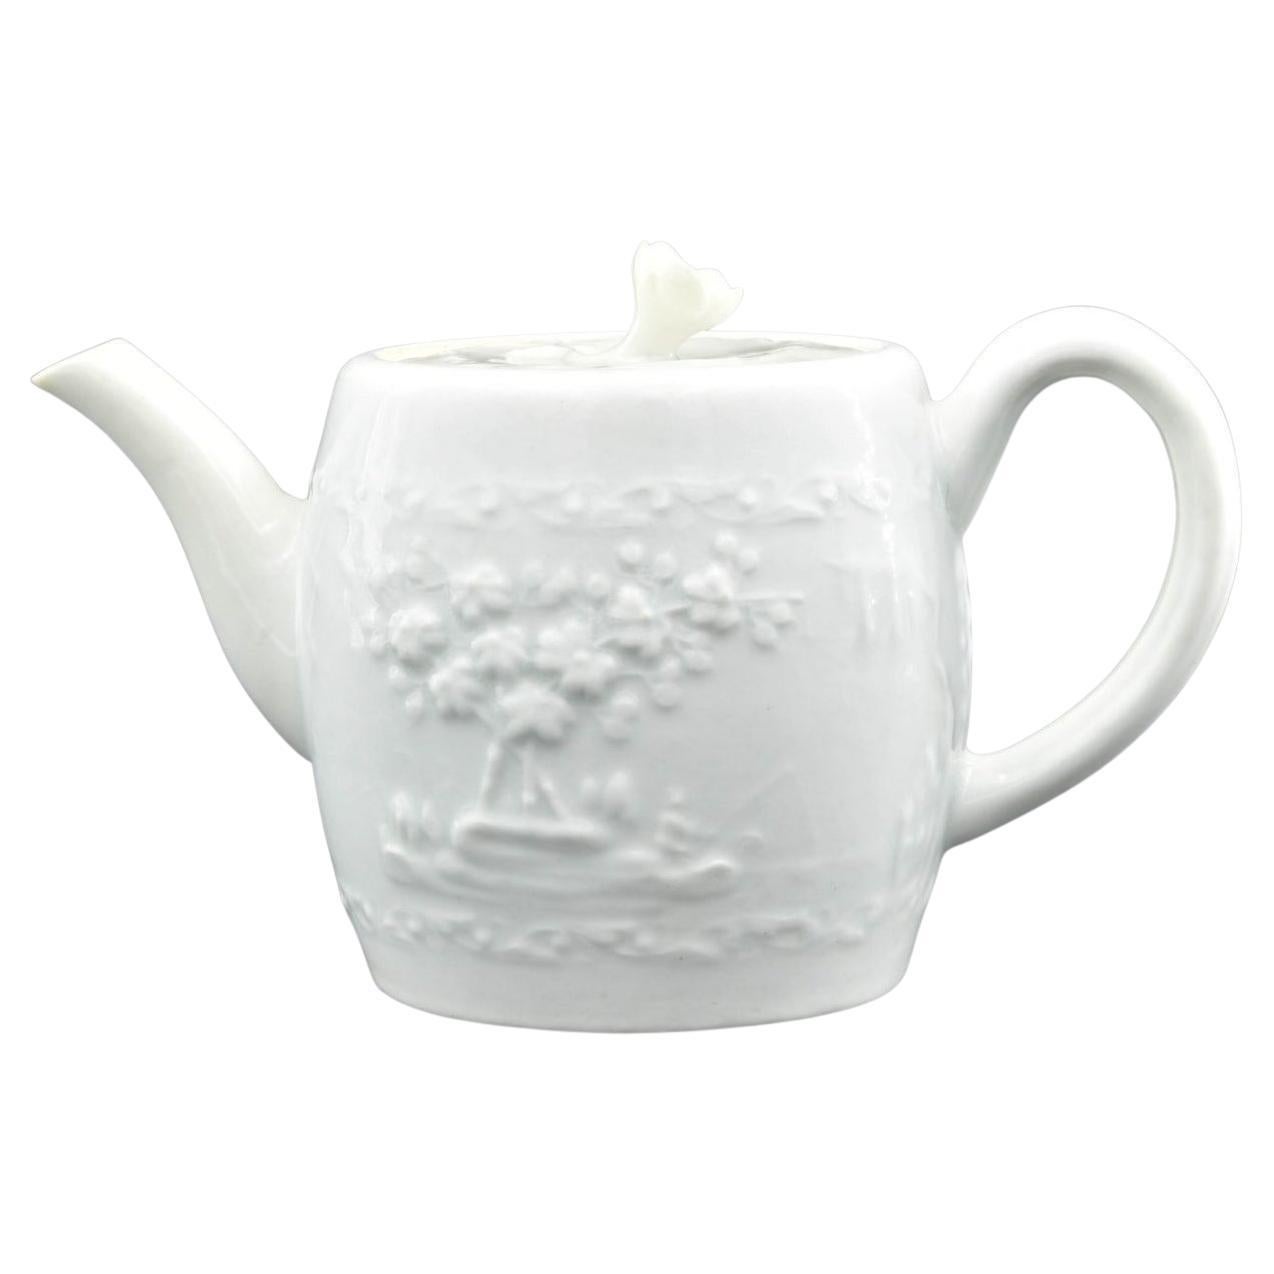 Teekanne in Blanc De Chine, Worcester, um 1760